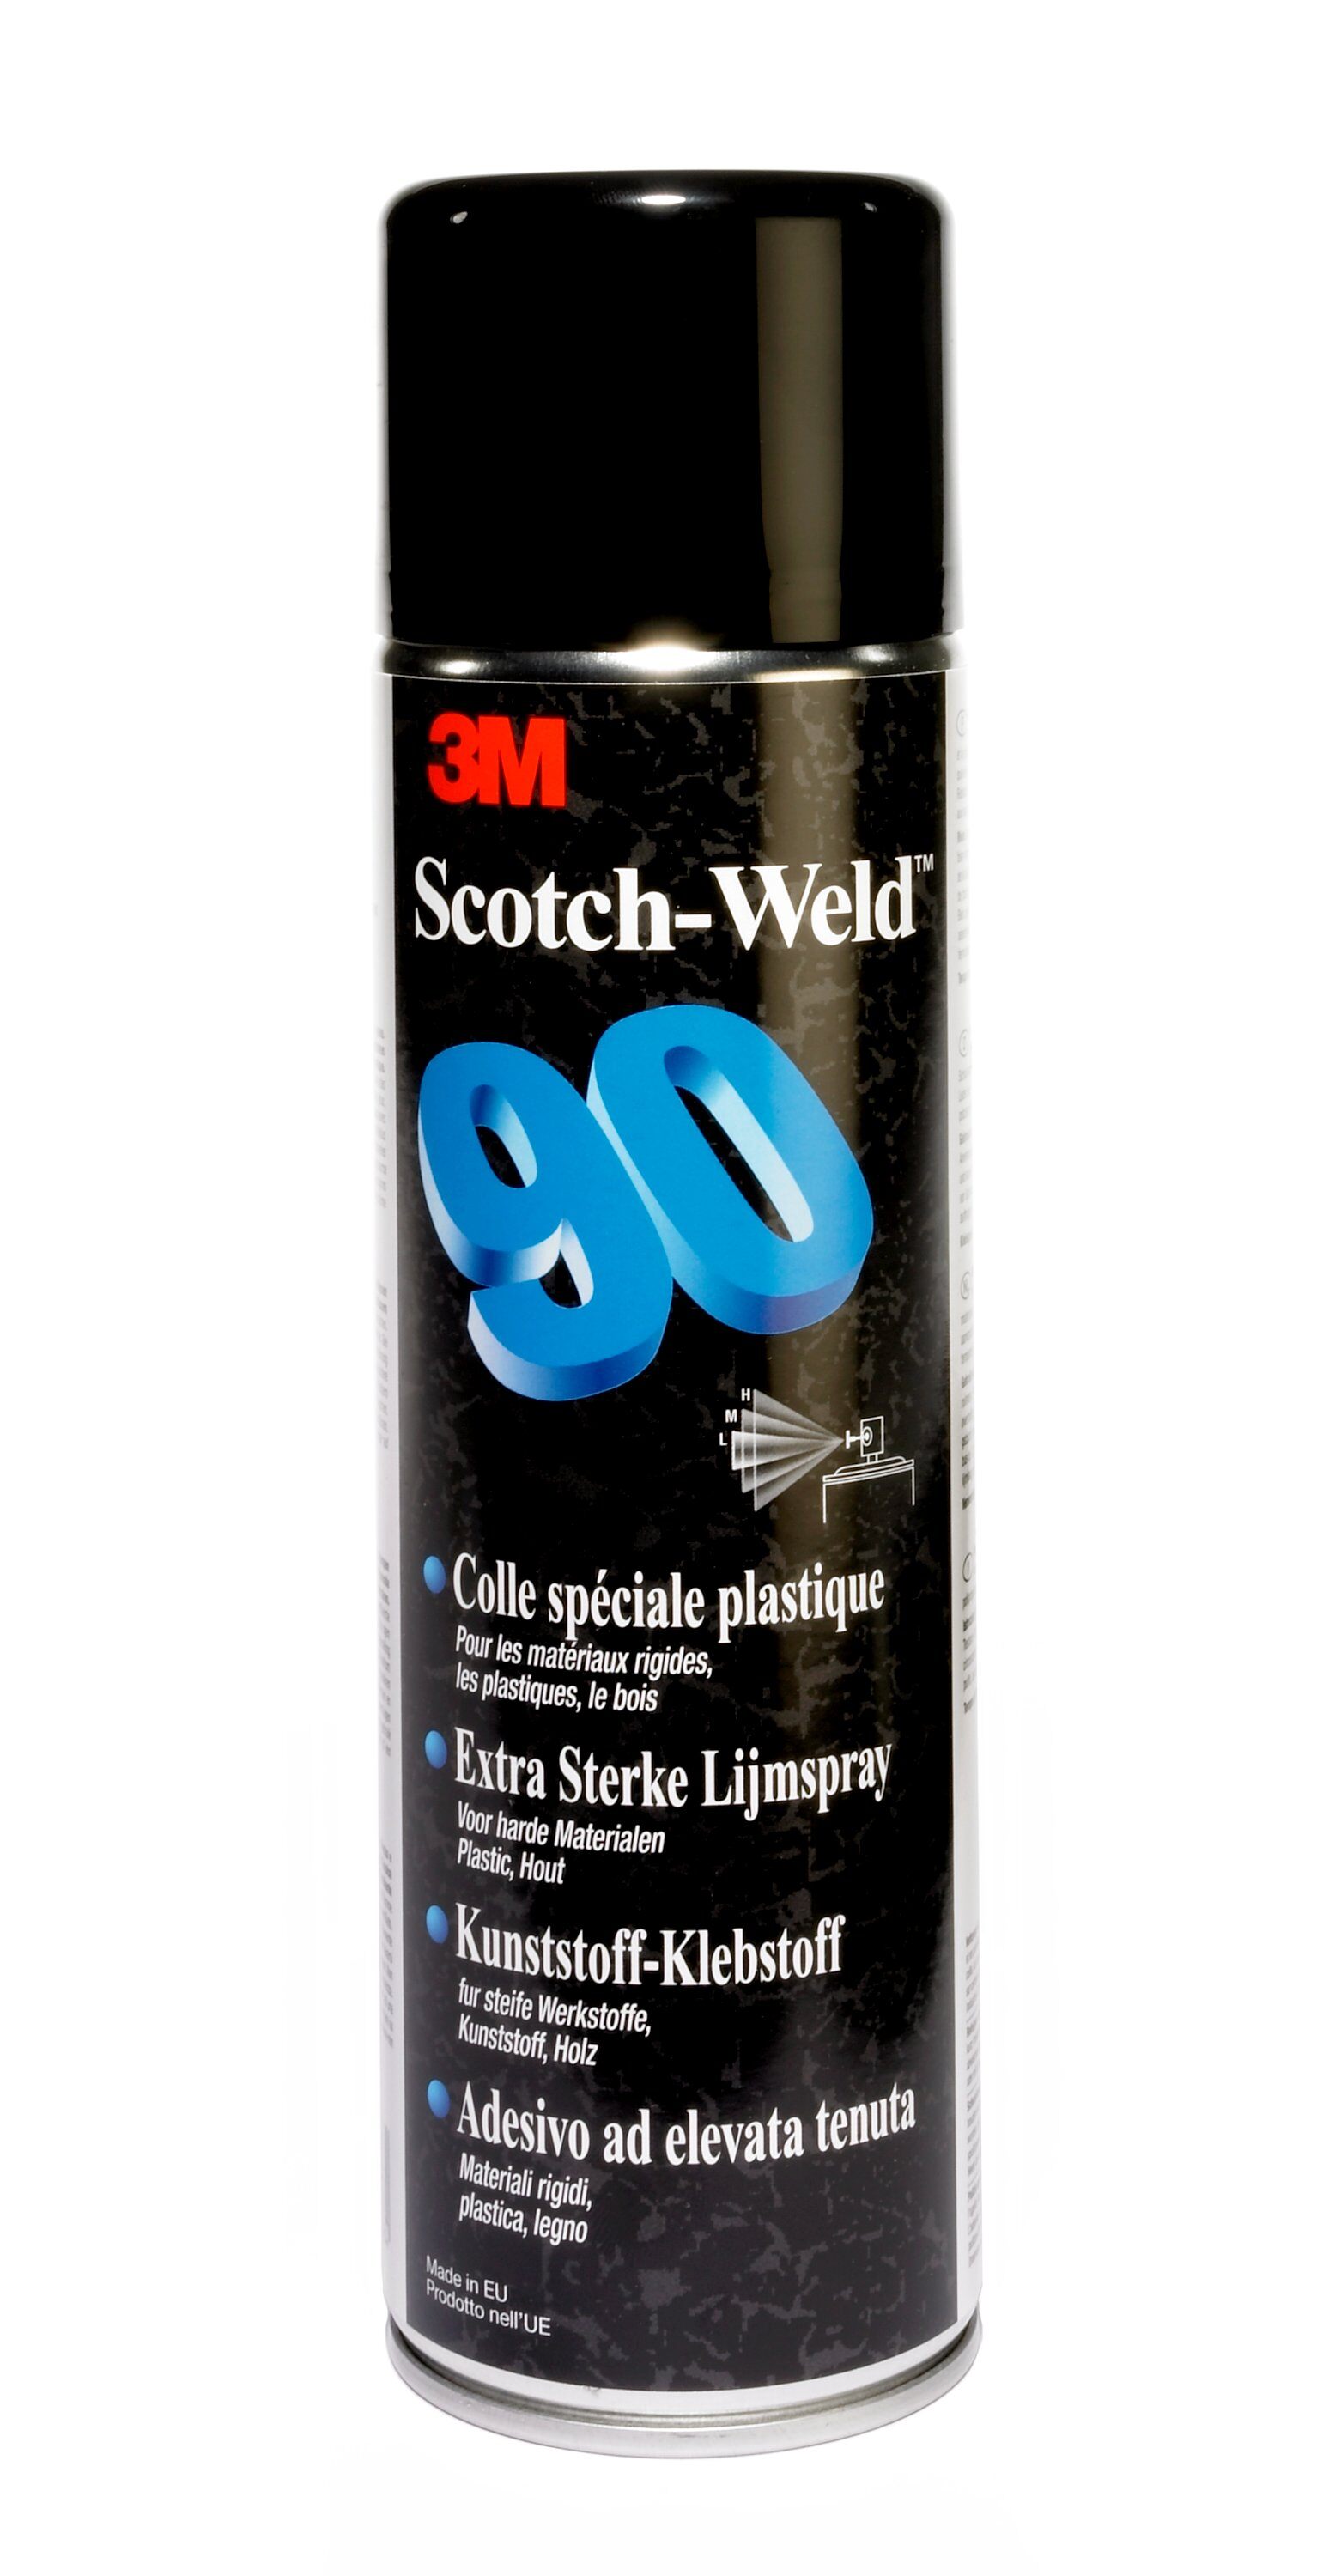 Artikelbild des Artikels 3M™ Scotch-Weld™ Sprühklebstoff auf Basis Synthetischer Elastomere Hi-Strength, Beige, 500 ml SW 90, Beige